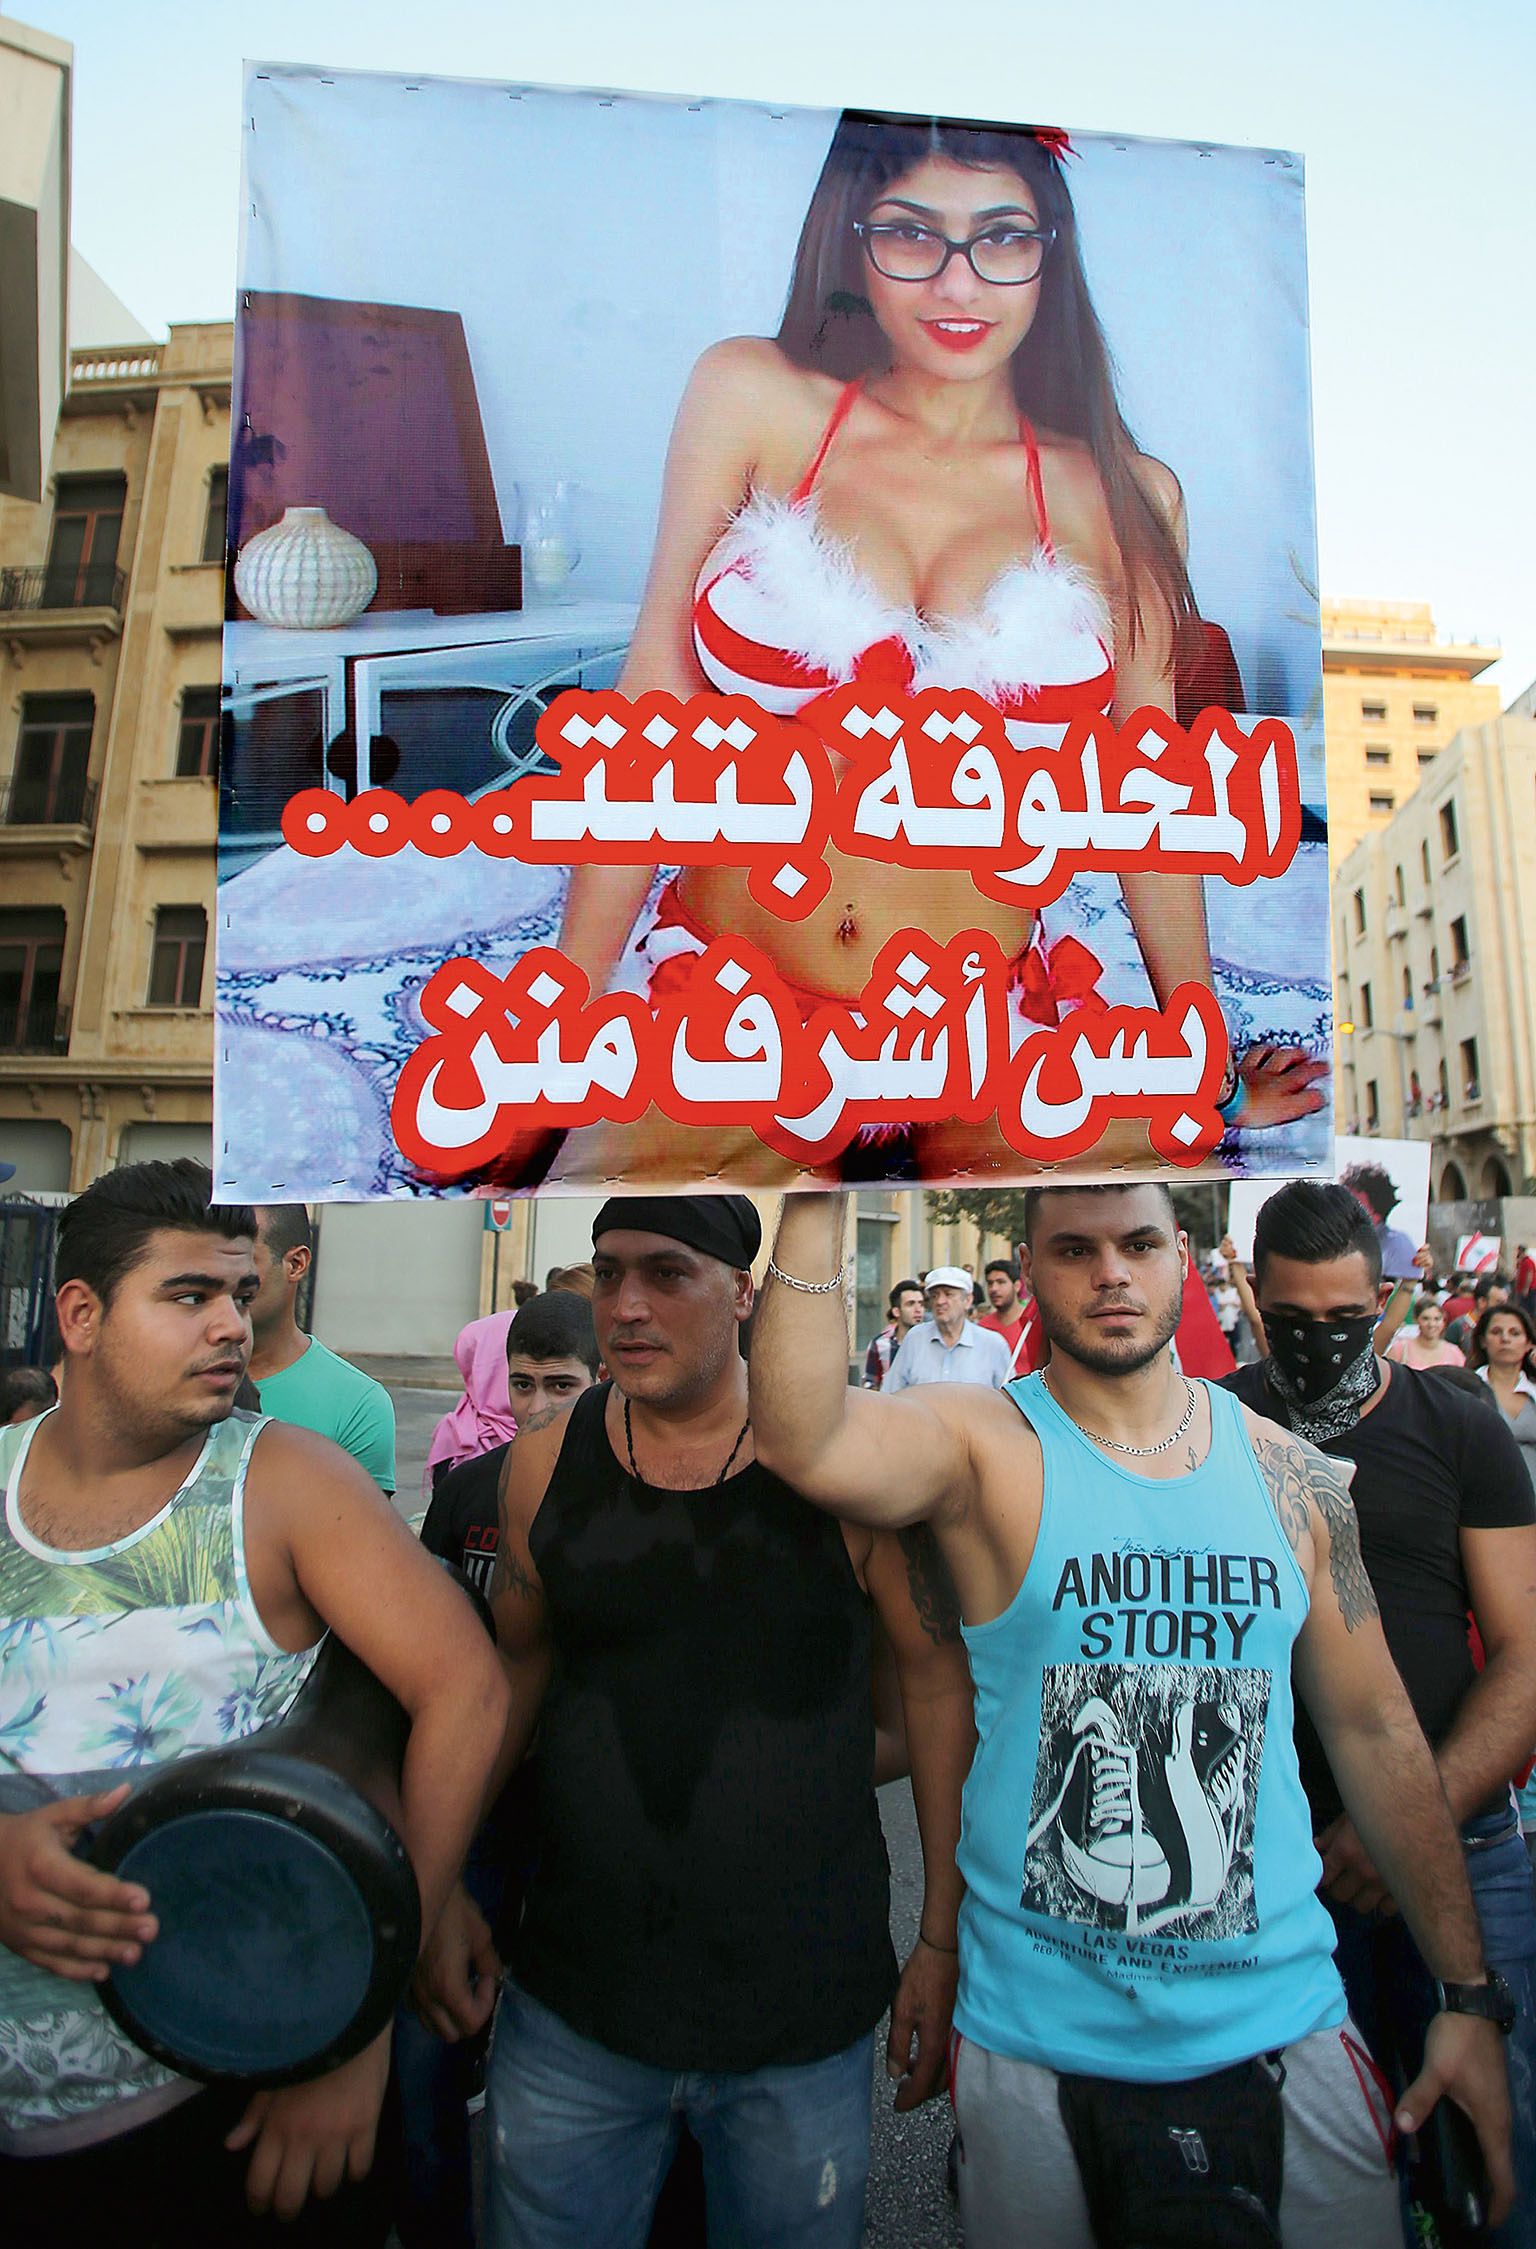 Pornohvězda jako heslo. Libanonci loni protestovali proti neschopnosti politiků. „Je pravda, že tato žena má sex, ale je slušnější než oni,“ stojí na plakátu s obrázkem pornohorečky libanonského původu Miy Khalify.